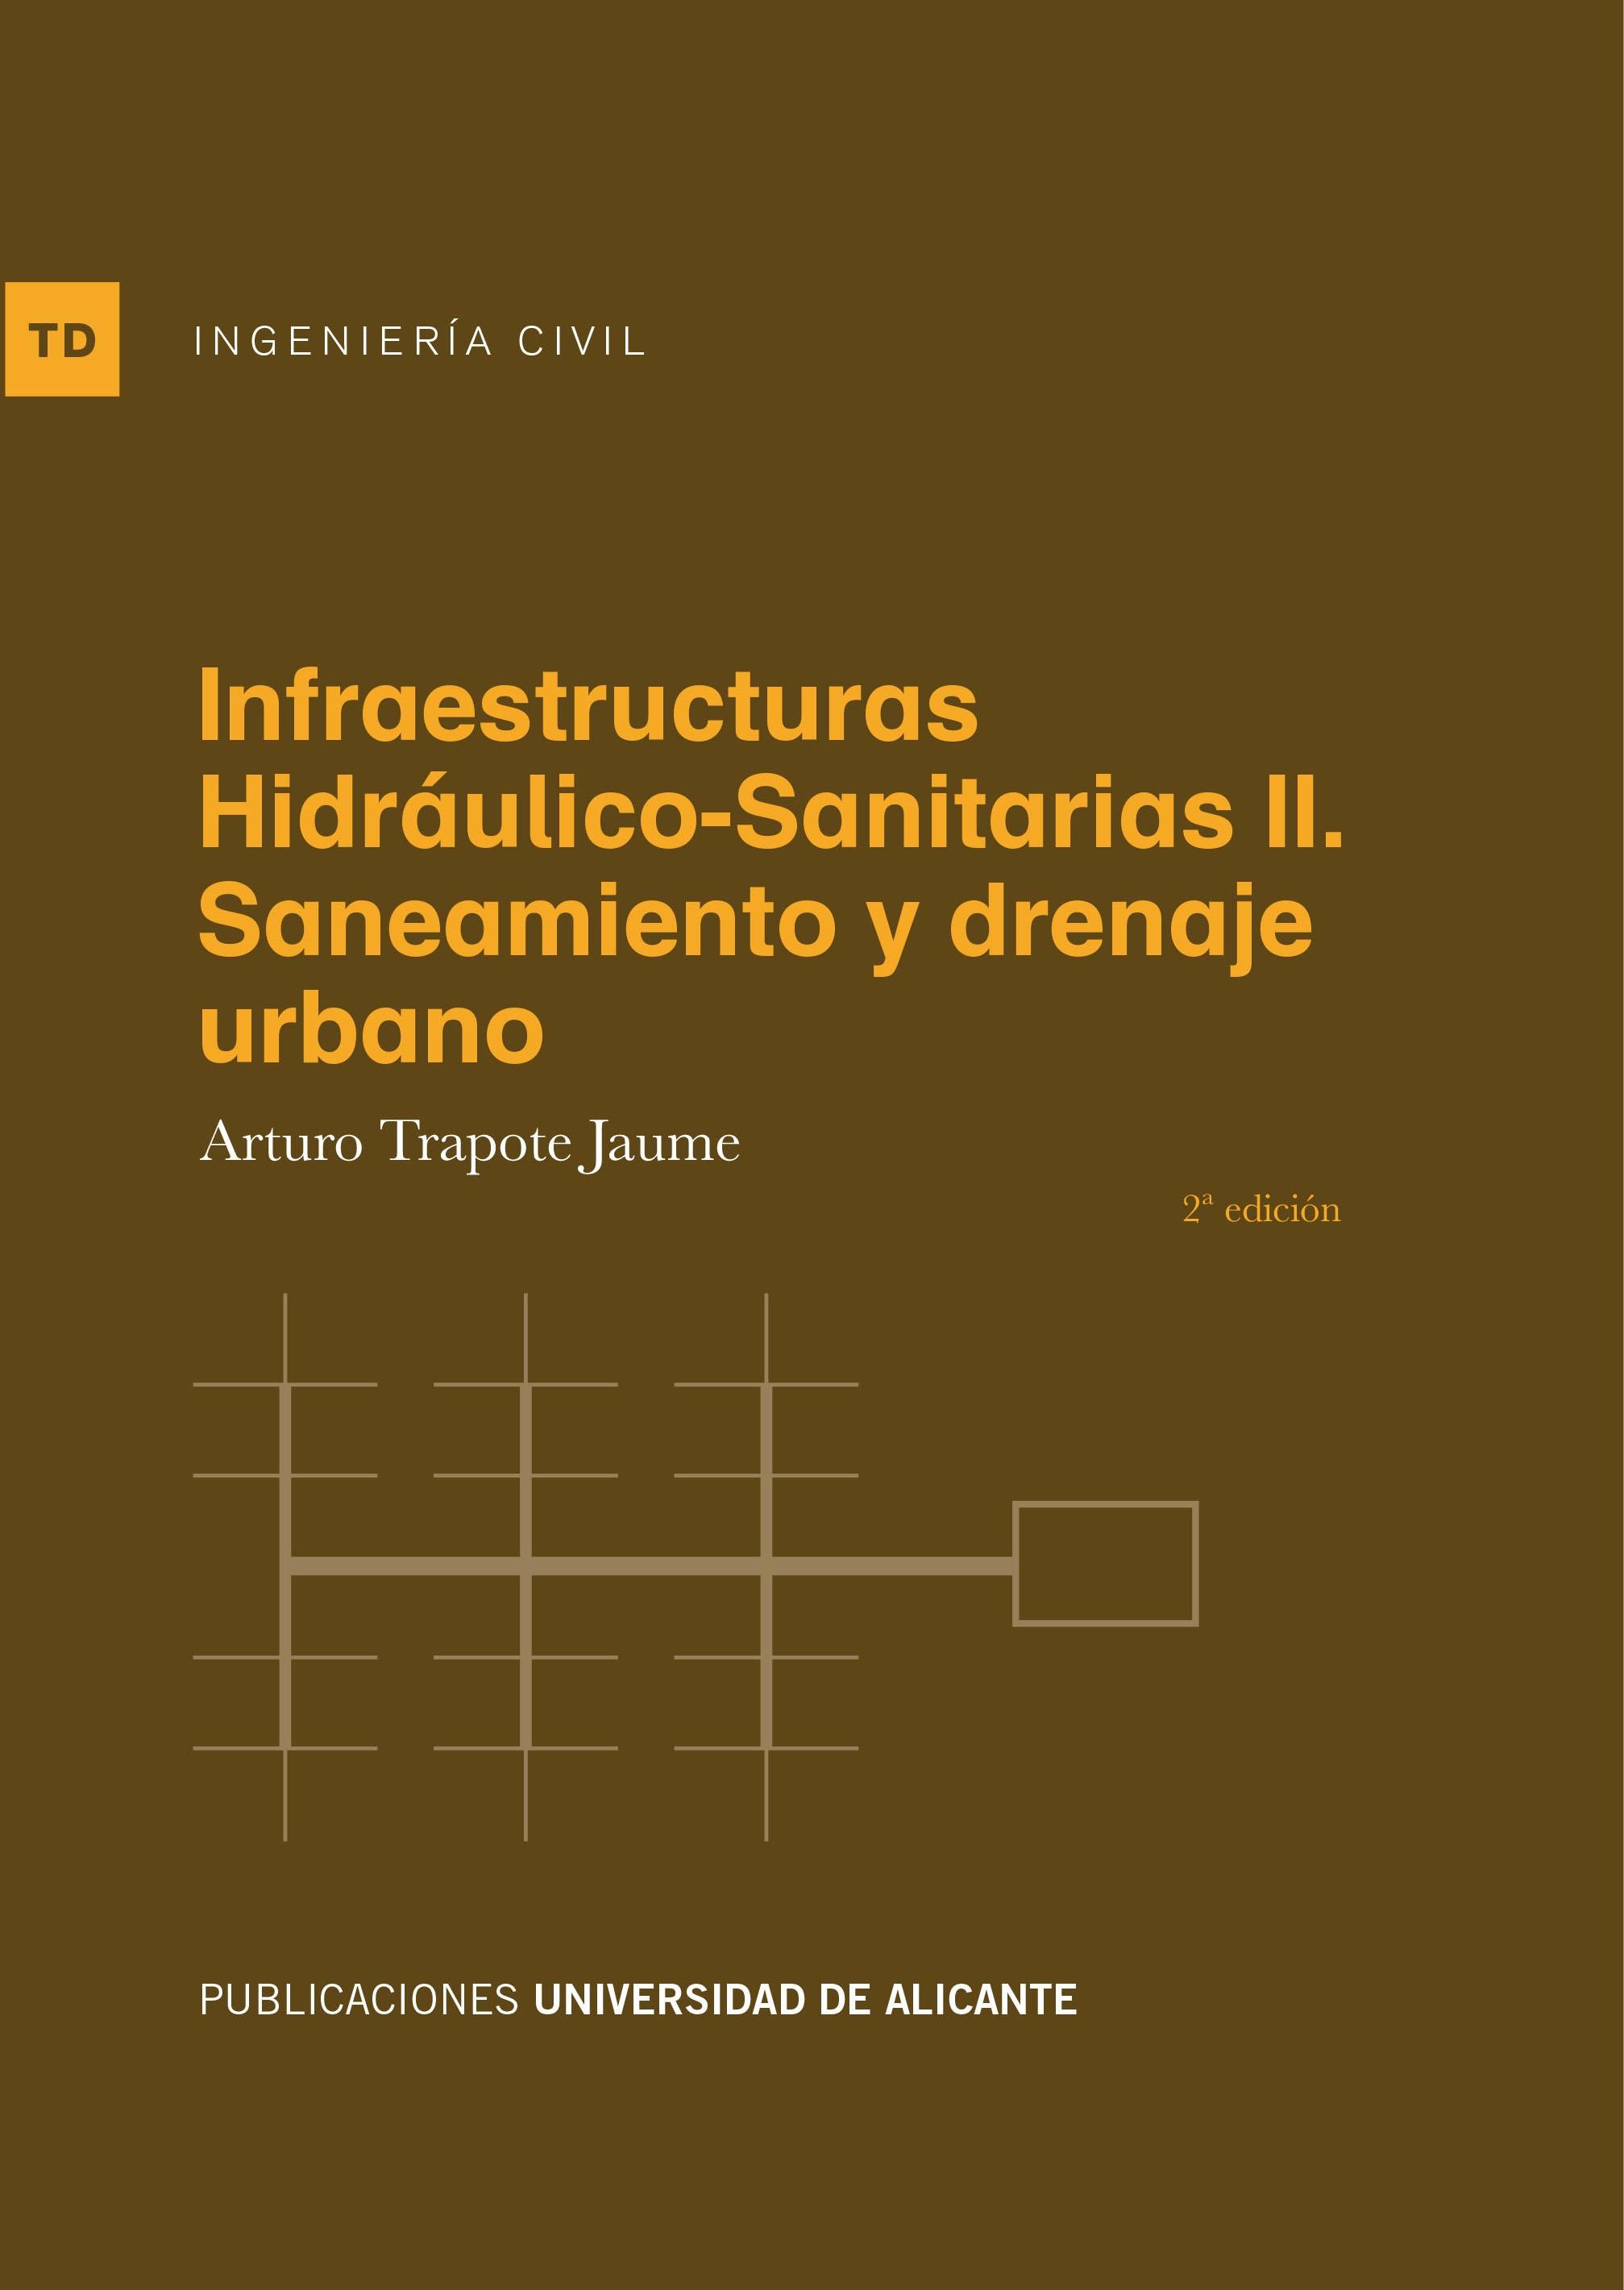 INFRAESTRUCTURAS HIDRÁULICO-SANITARIAS II (2 ED.) "SANEAMIENTO Y DRENAJE URBANO"